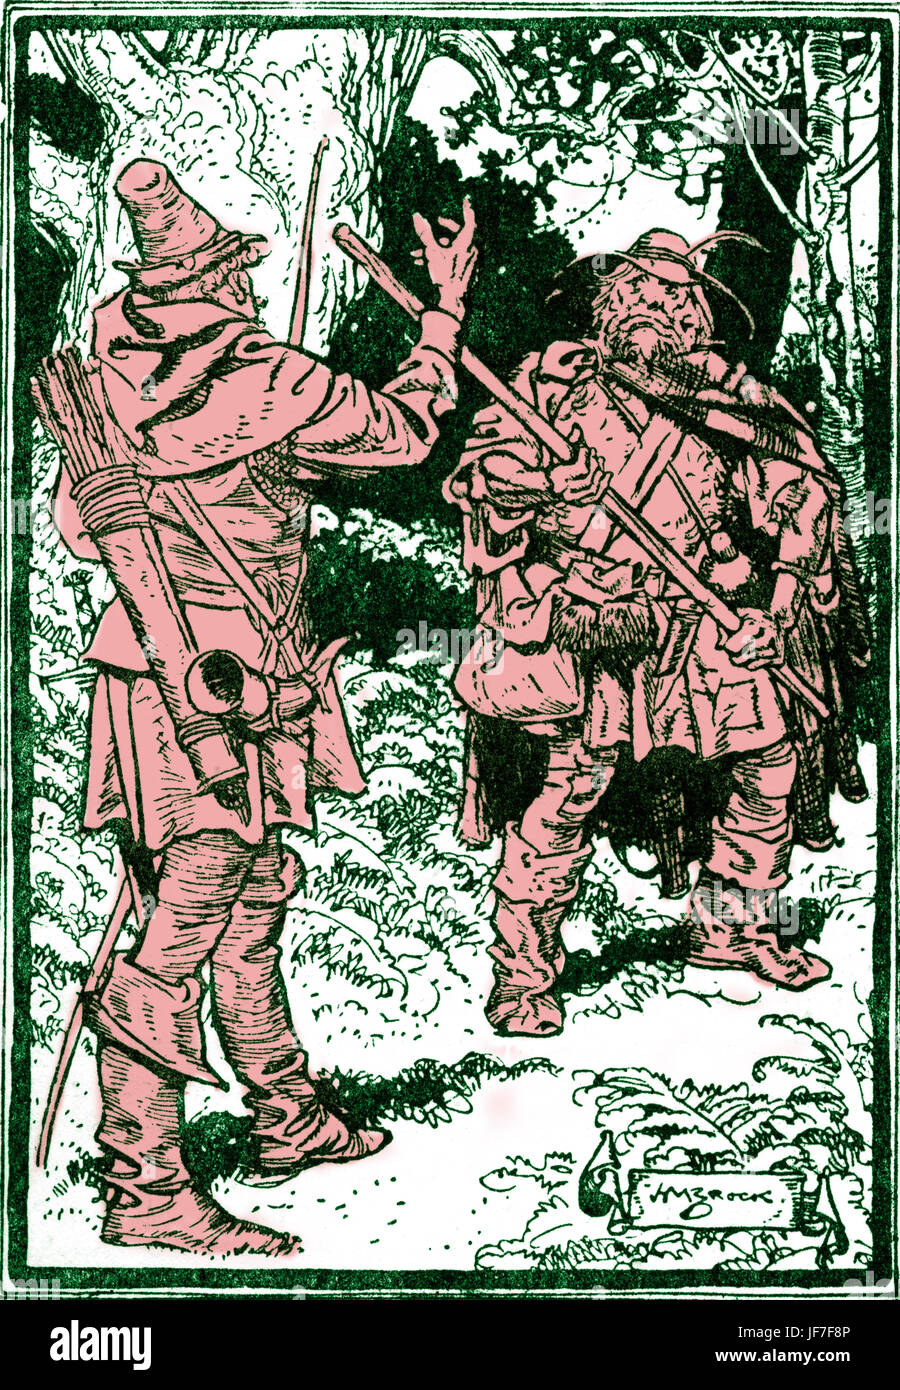 Robin Hood und die Männer der grünen. Bildunterschrift lautet: "was du willst mit mir, Woodman?" Illustriert von H. M. Brock. C.1912. kolorierte Version. Stockfoto